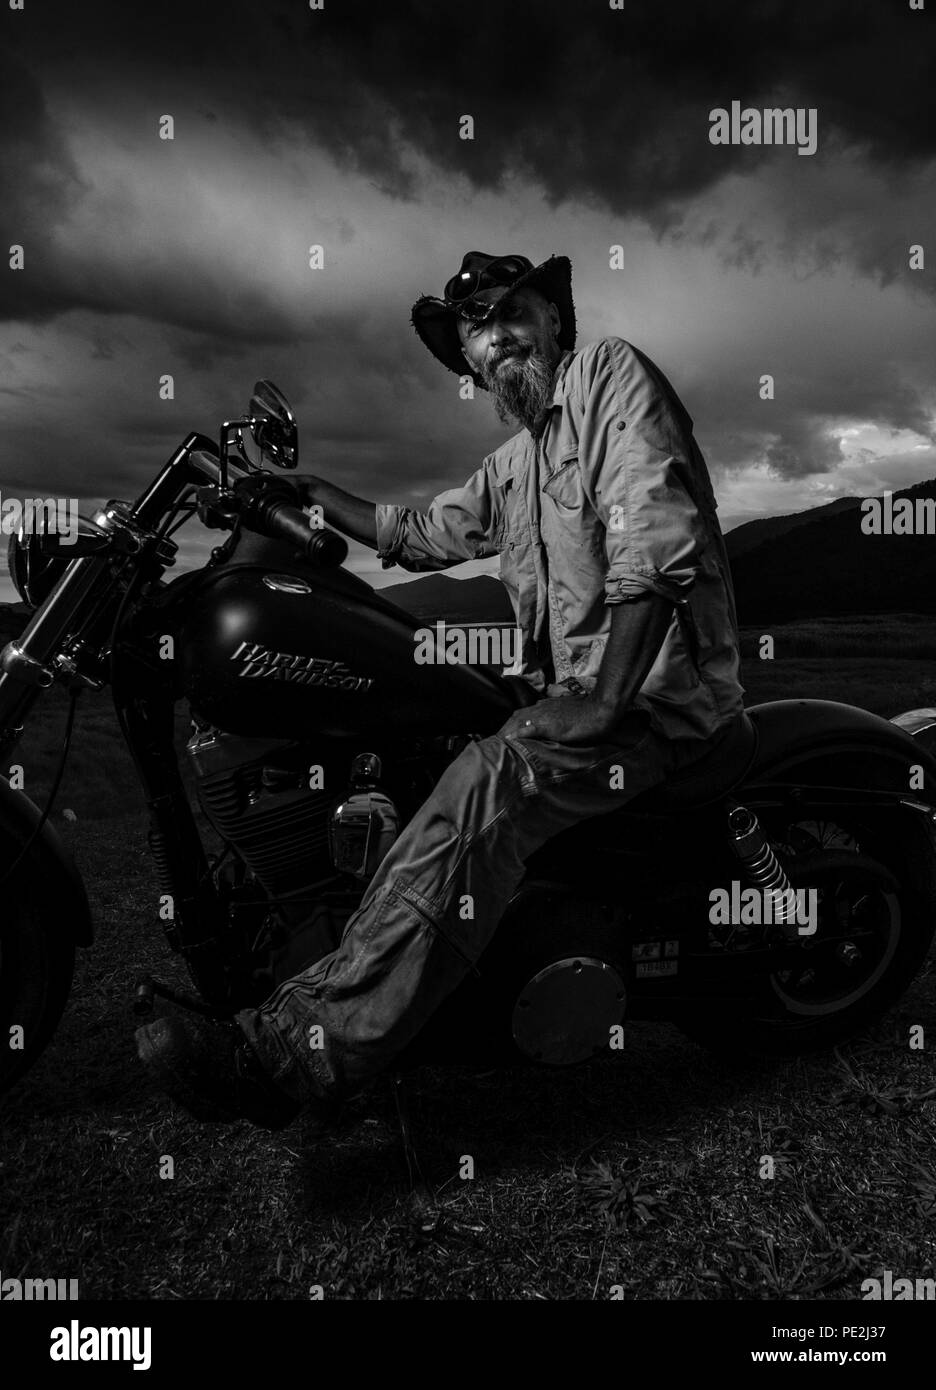 Rider Harley Davidson s'arrête pour un chat Banque D'Images